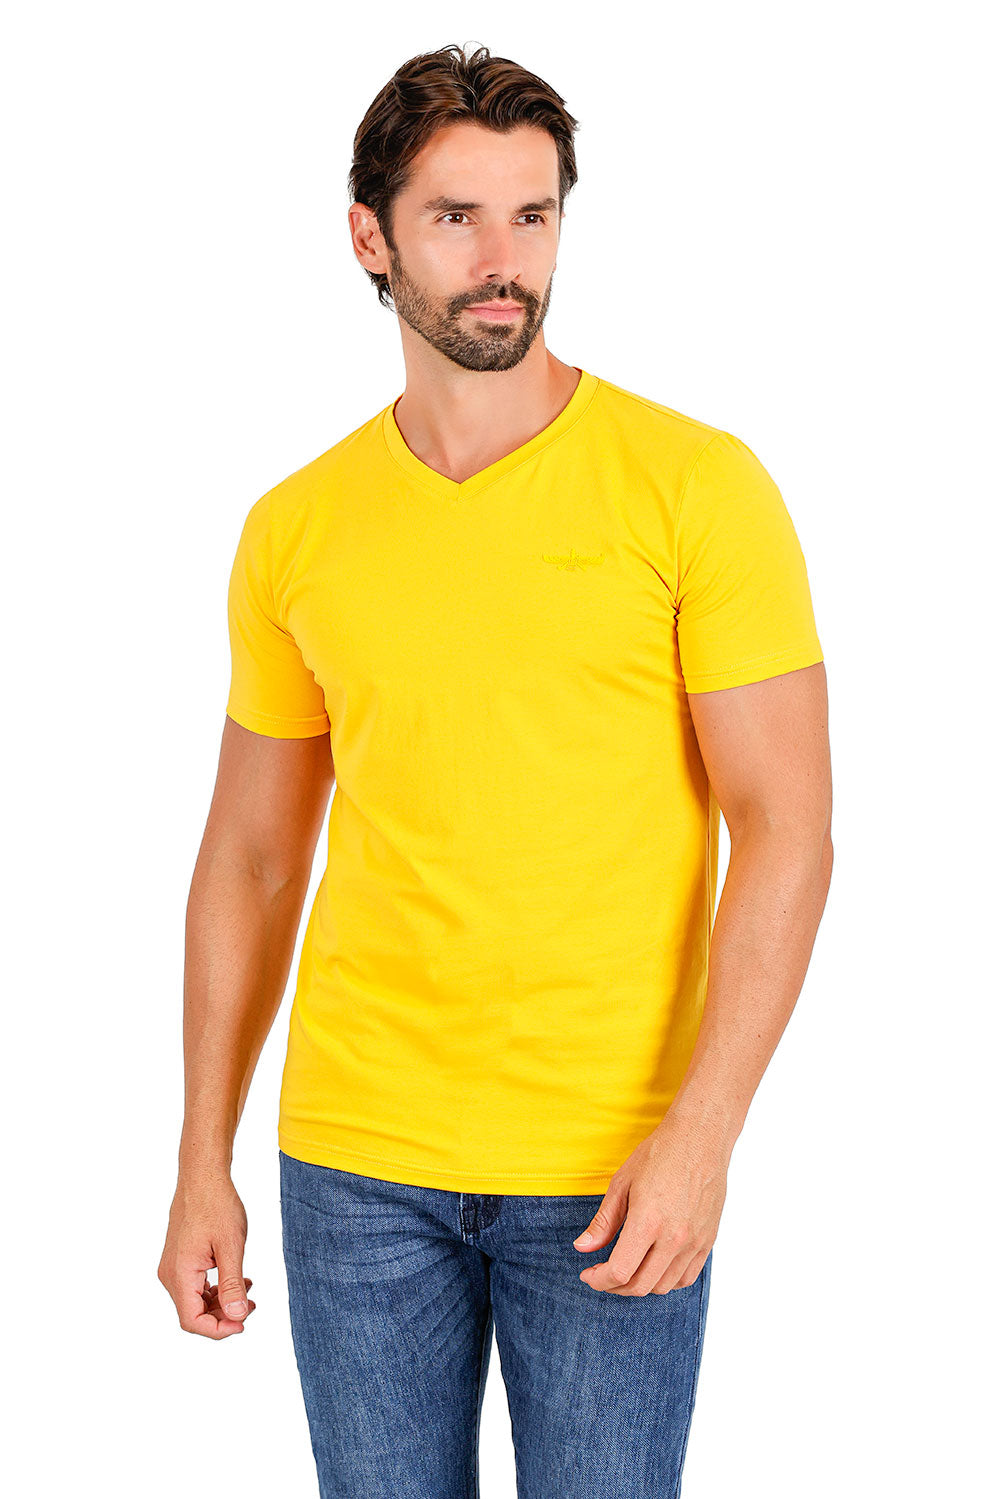 BARABAS Men's Solid Color V-neck T-shirts TV216 Mustard